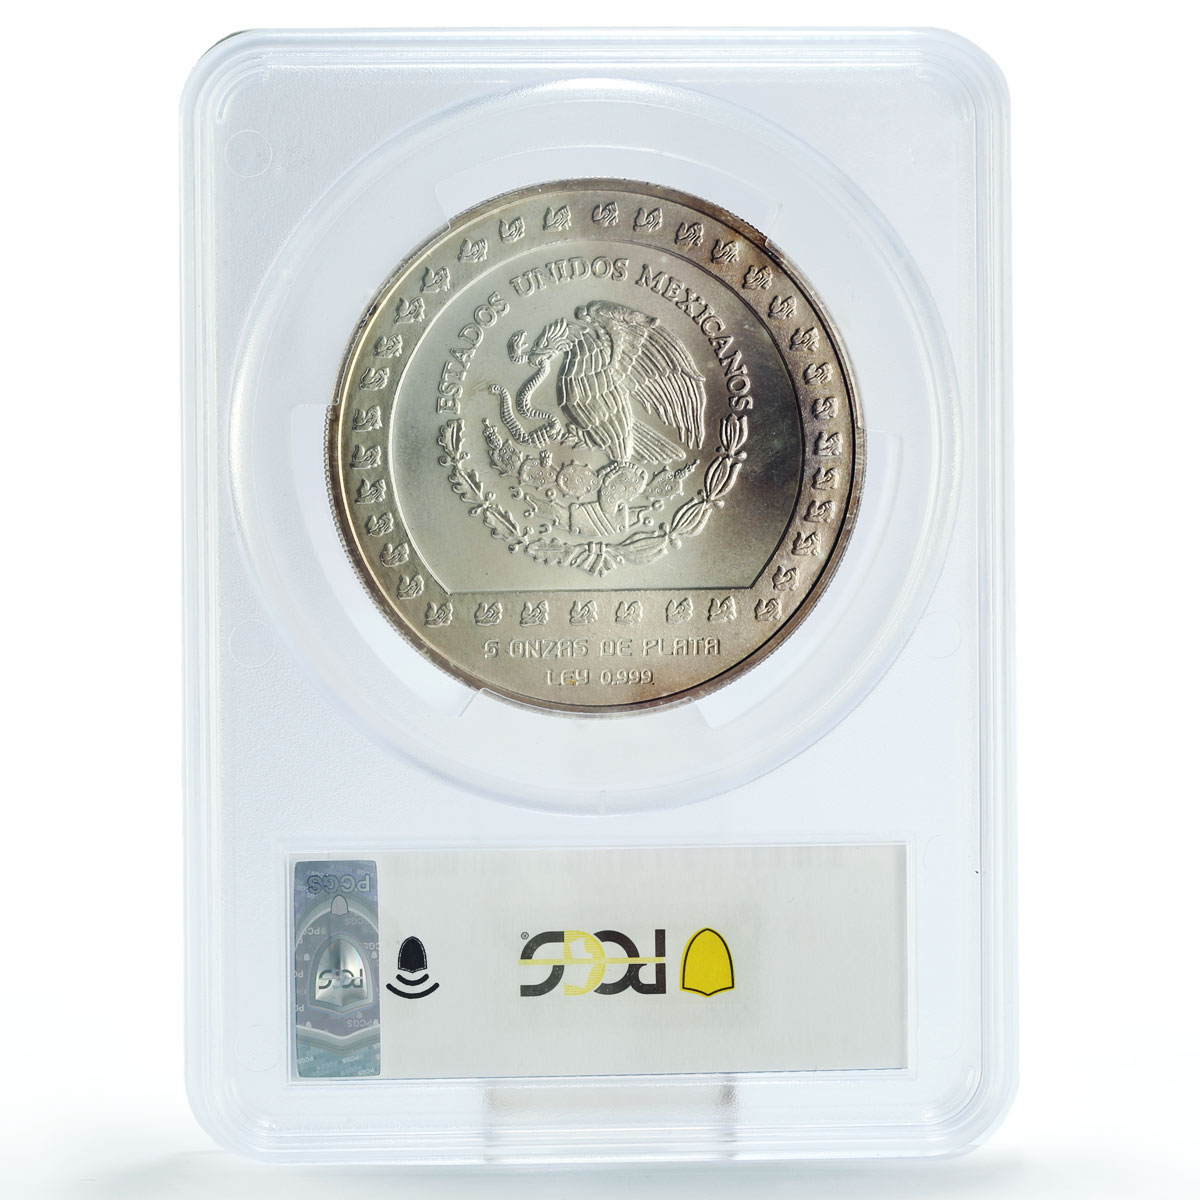 Mexico 10000 pesos Precolombina Piedra de Tizoc MS69 PCGS 5 oz silver coin 1992